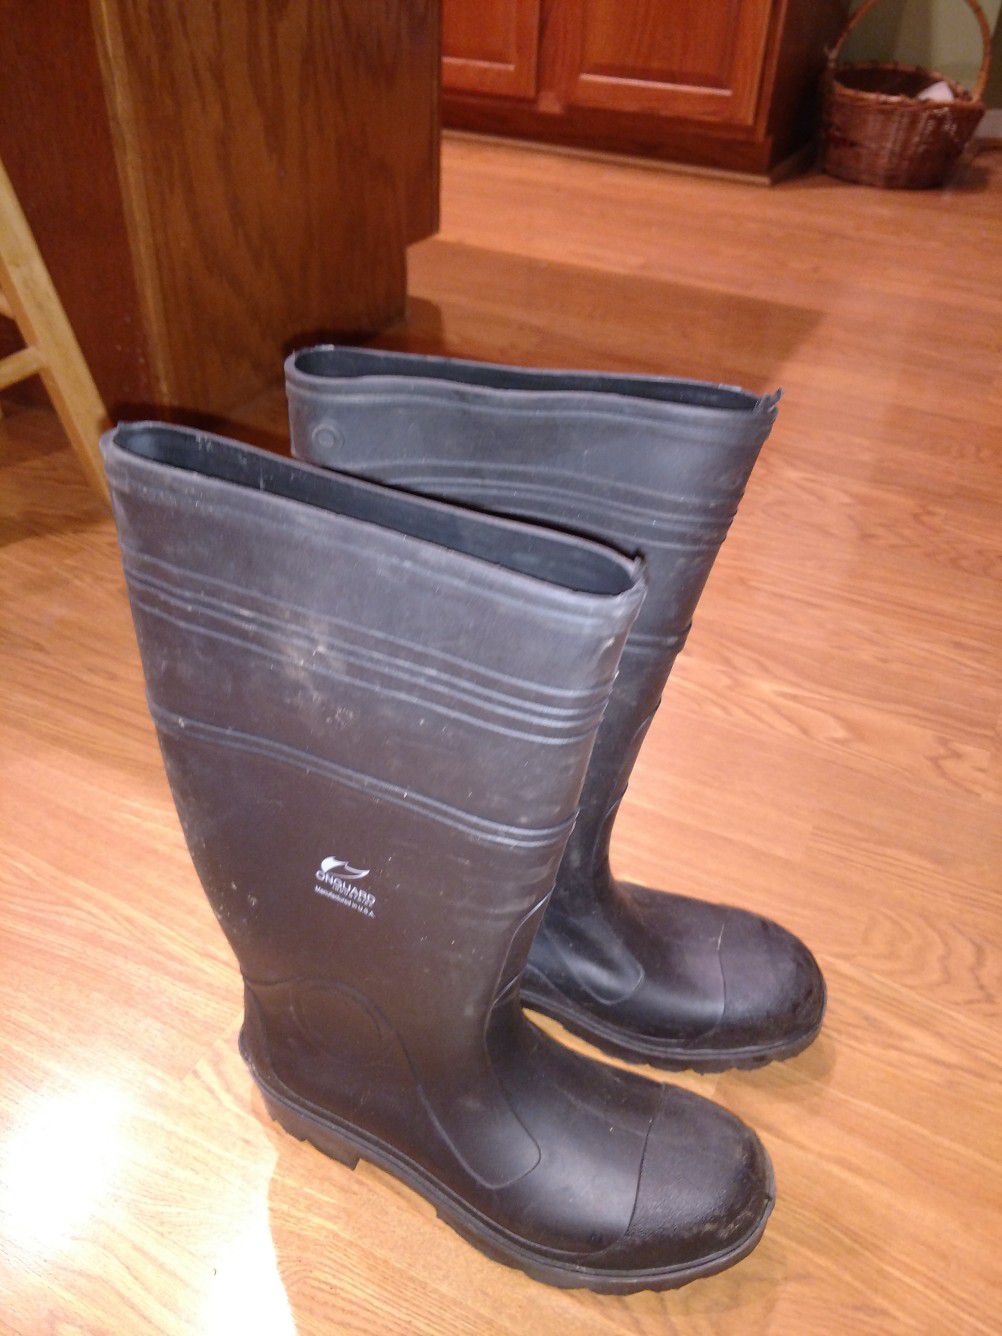 Men's size 7 rain boots